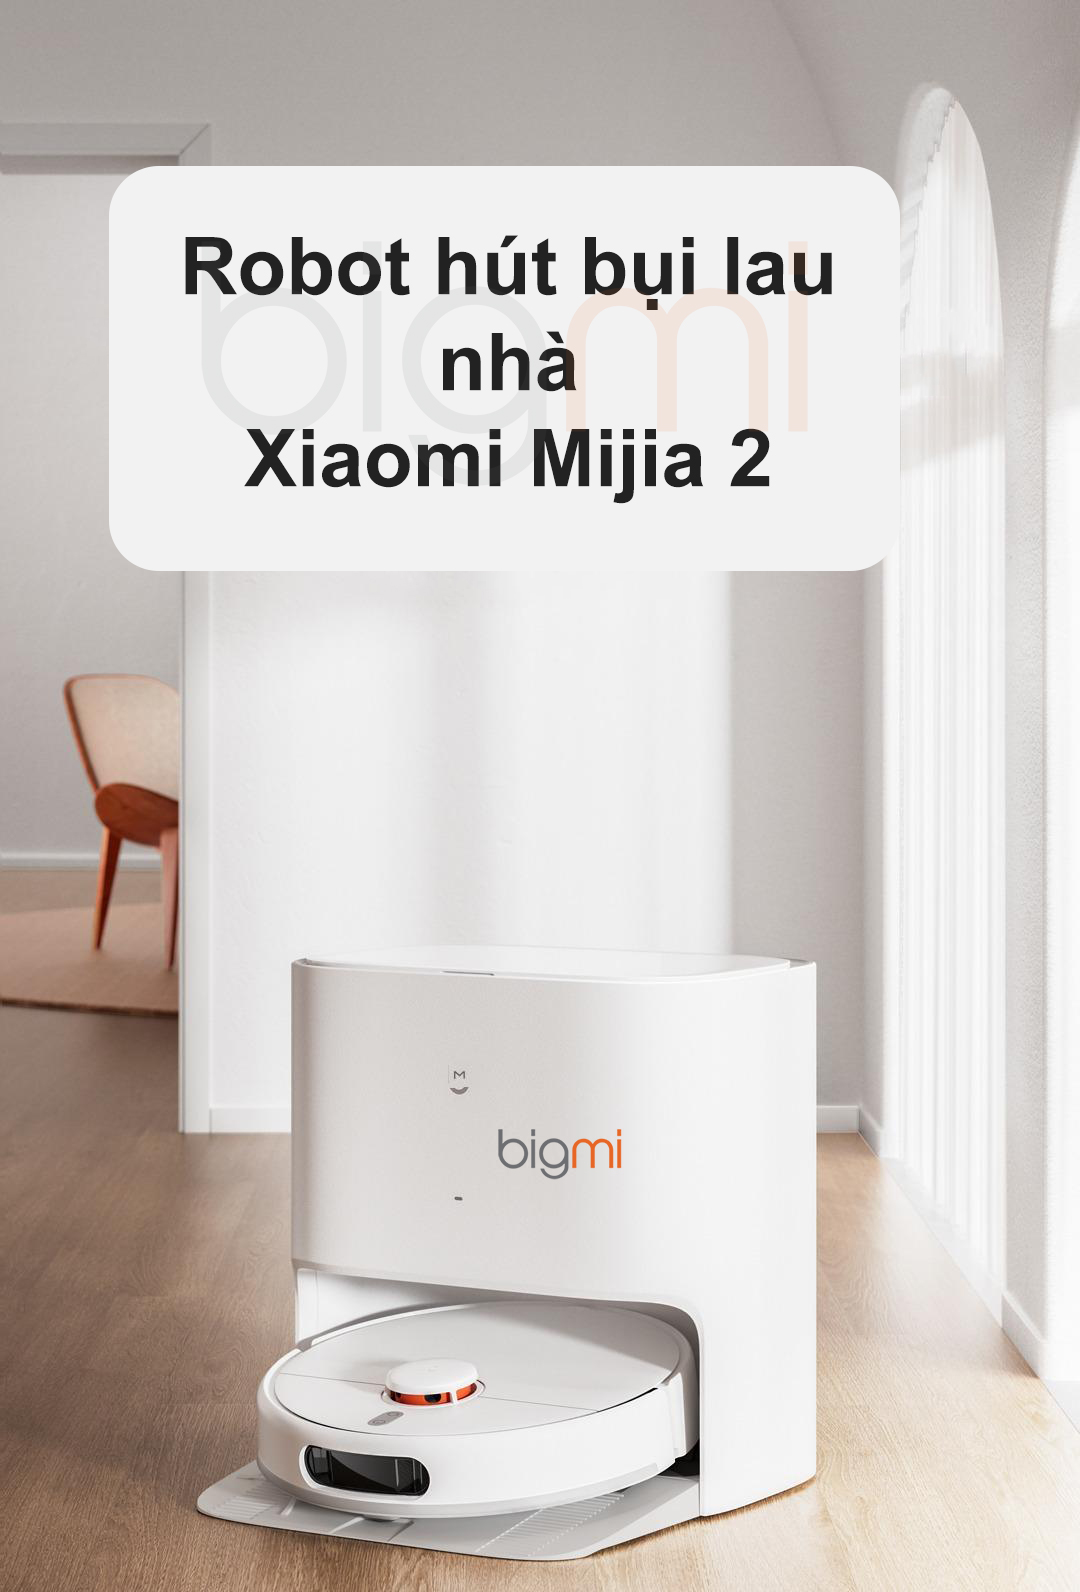 Robot hut bui lau nha Xiaomi Mijia 2 thong minh Model 2023 1